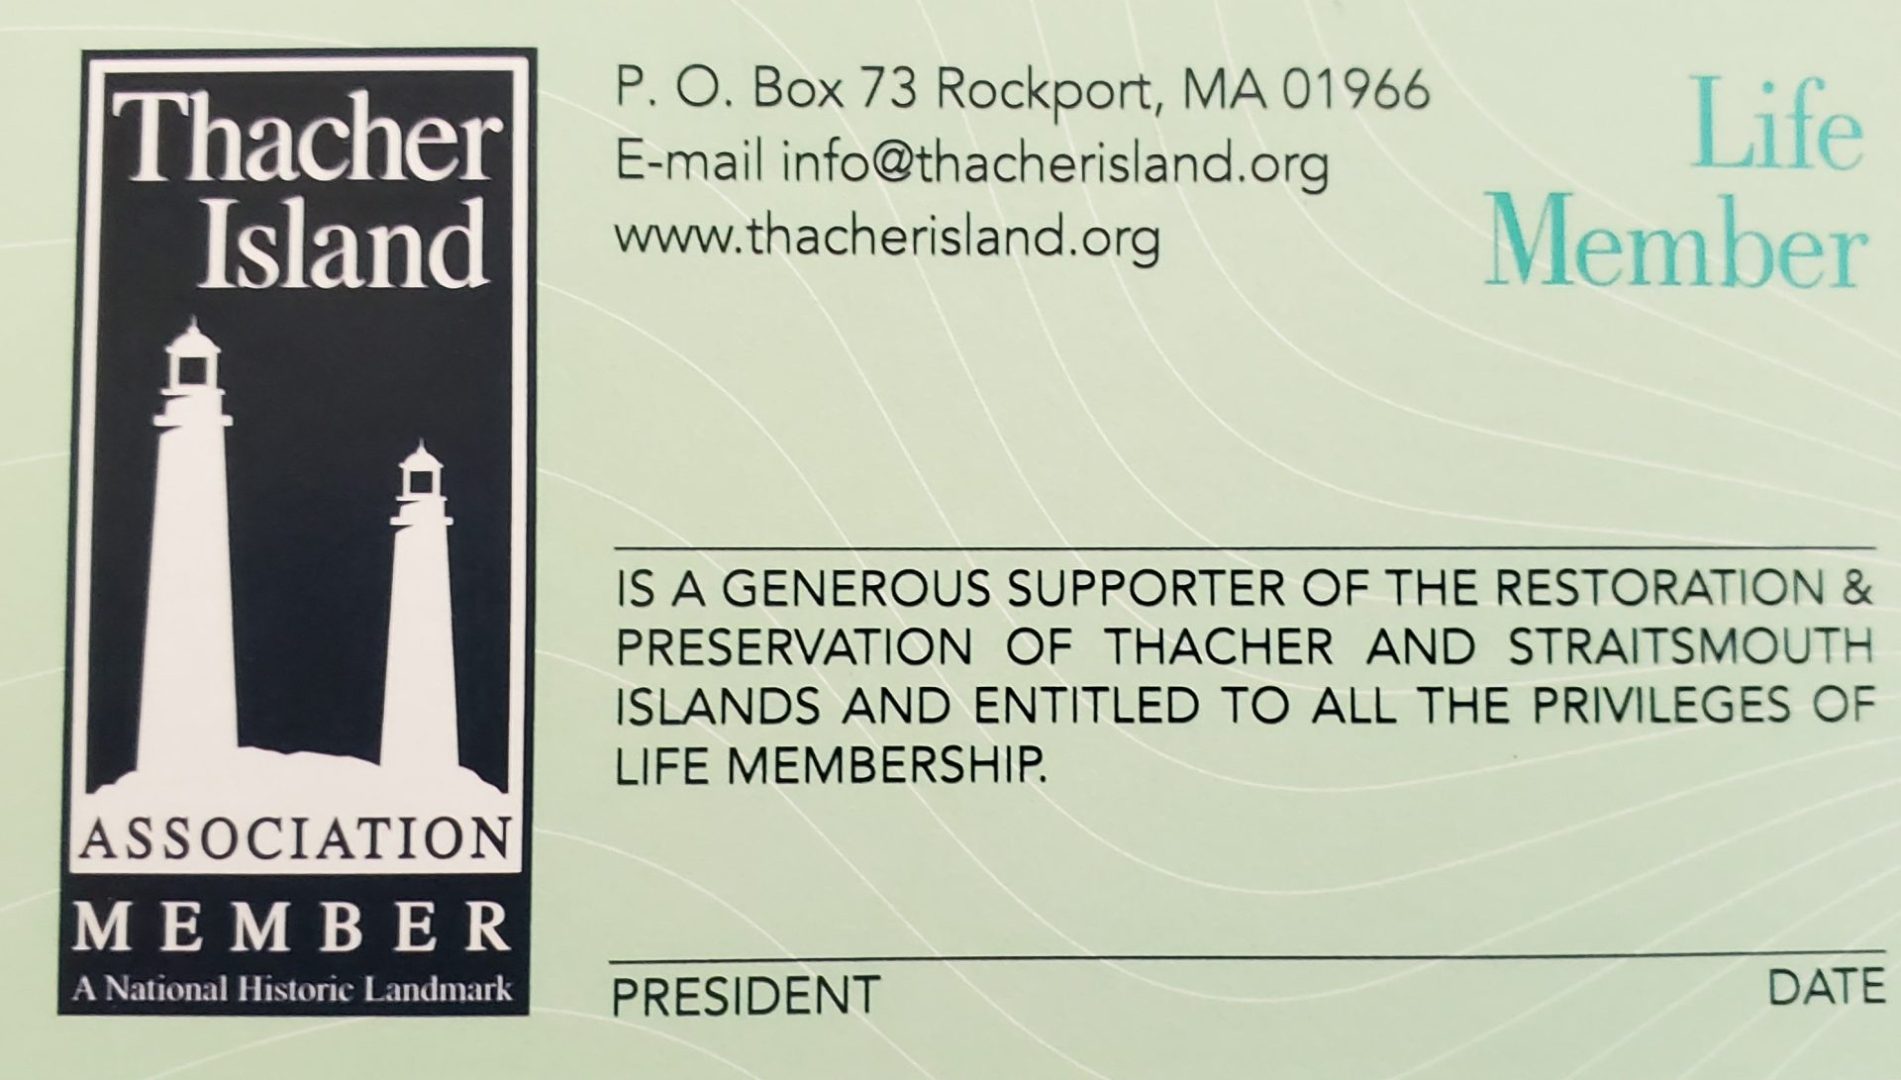 Thacher Island Association New Life Member Card 2022